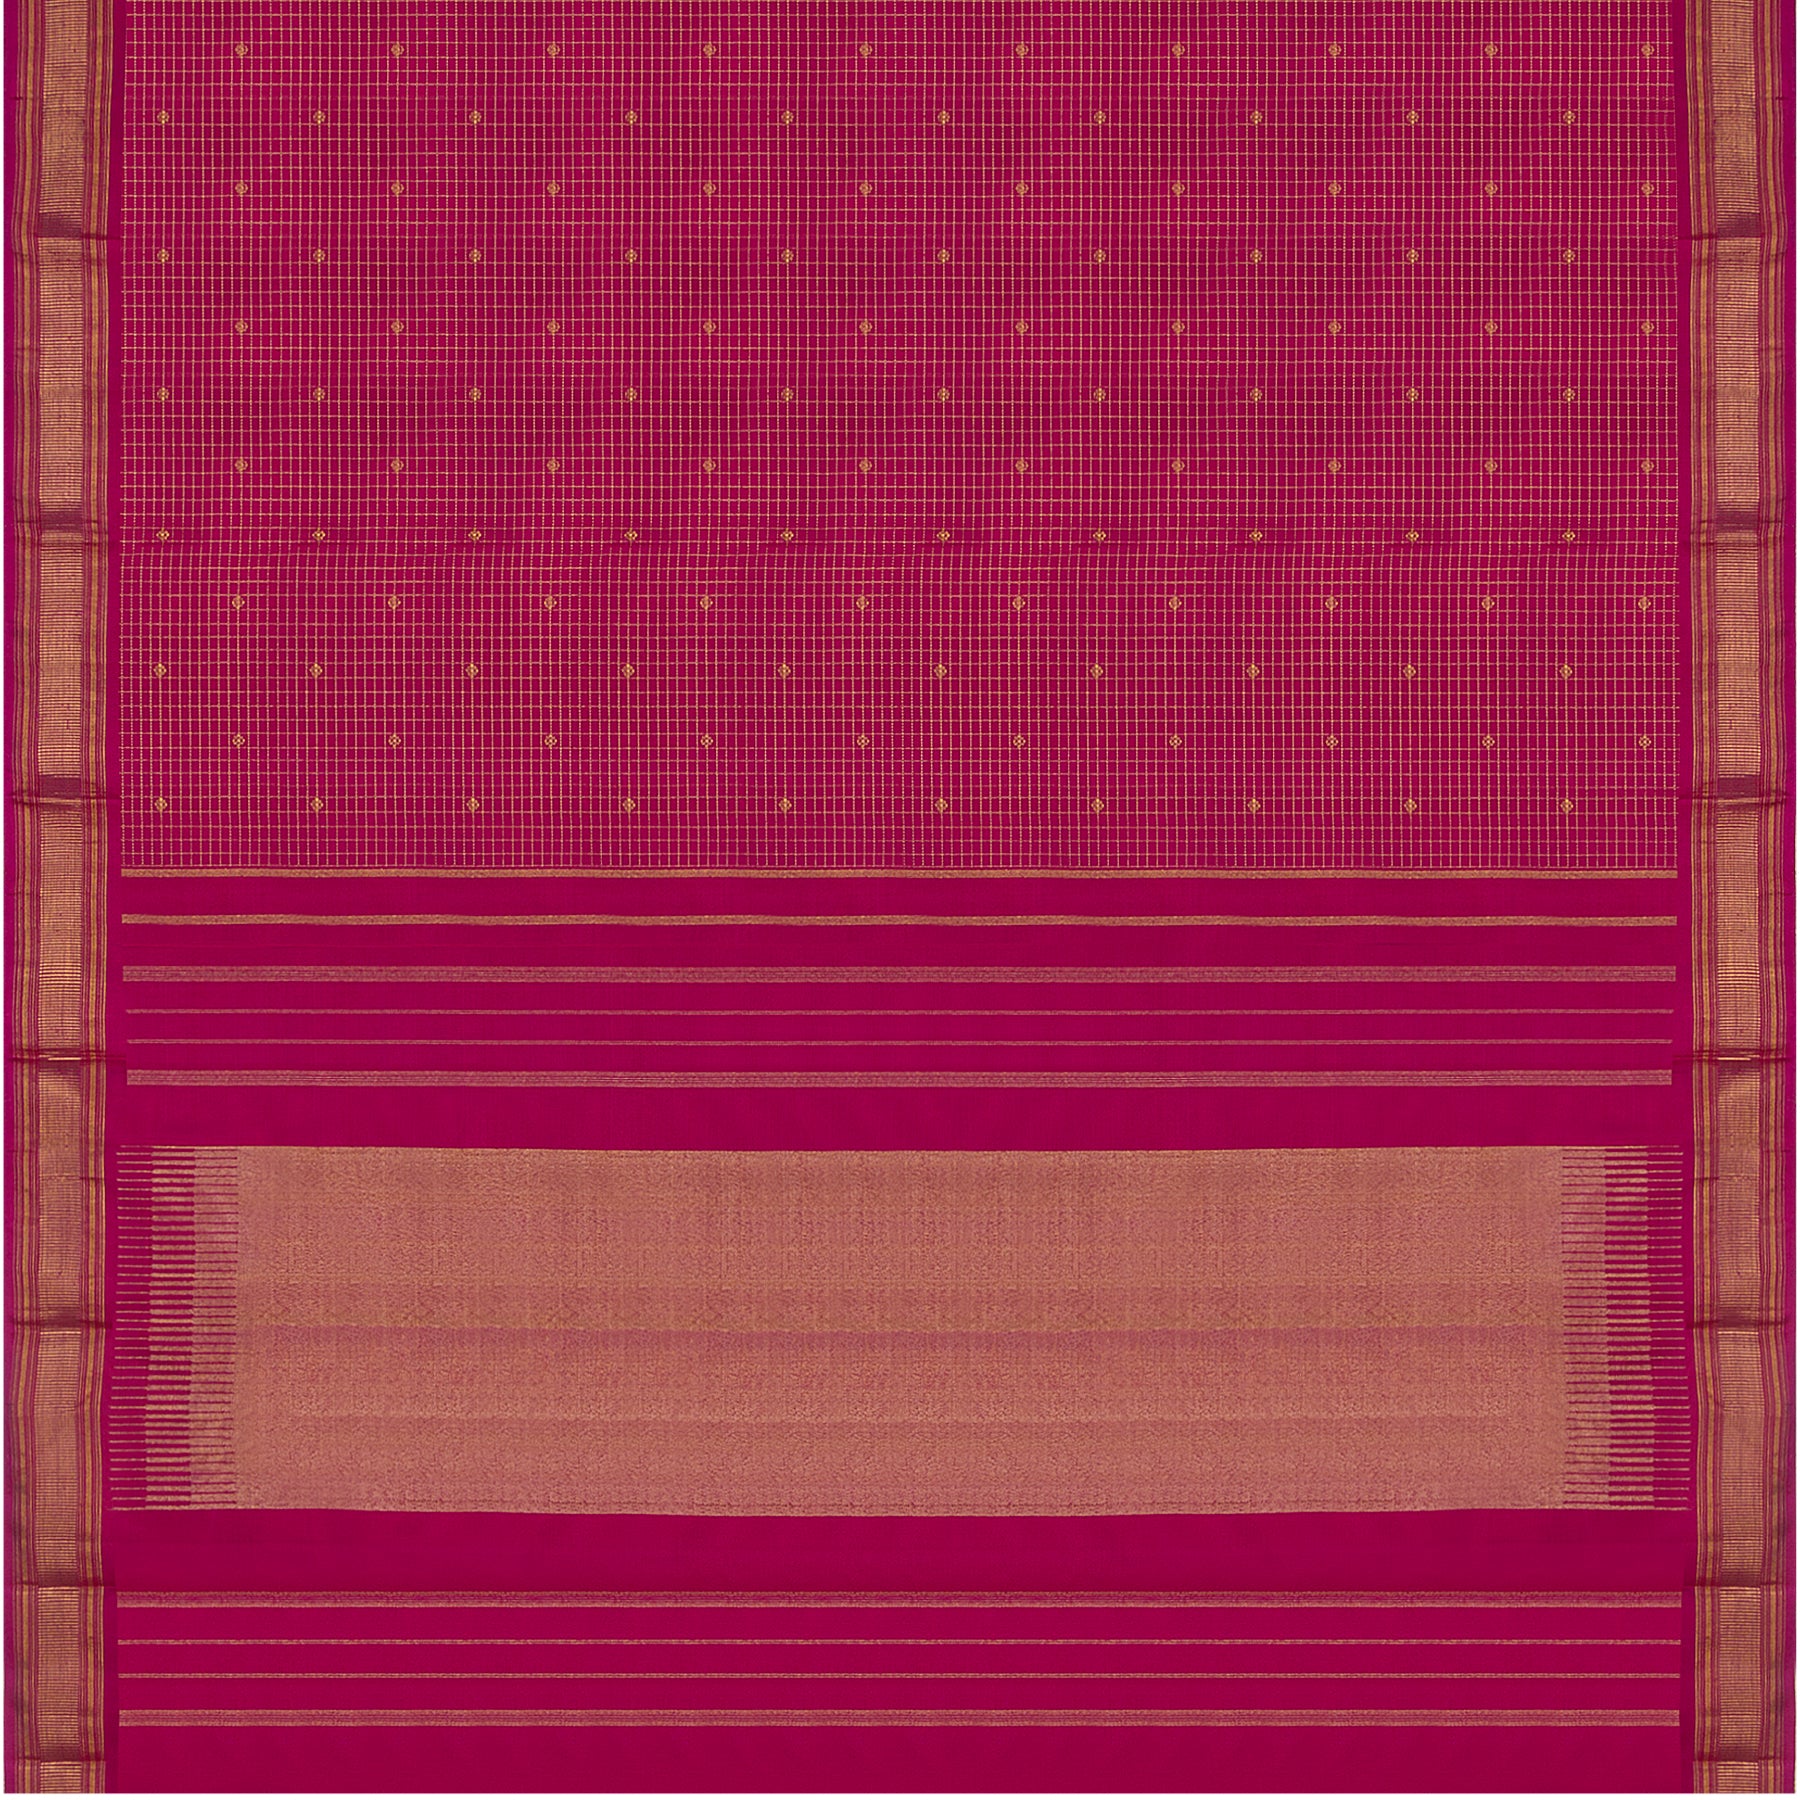 Kanakavalli Kanjivaram Silk Sari 23-611-HS001-09904 - Full View